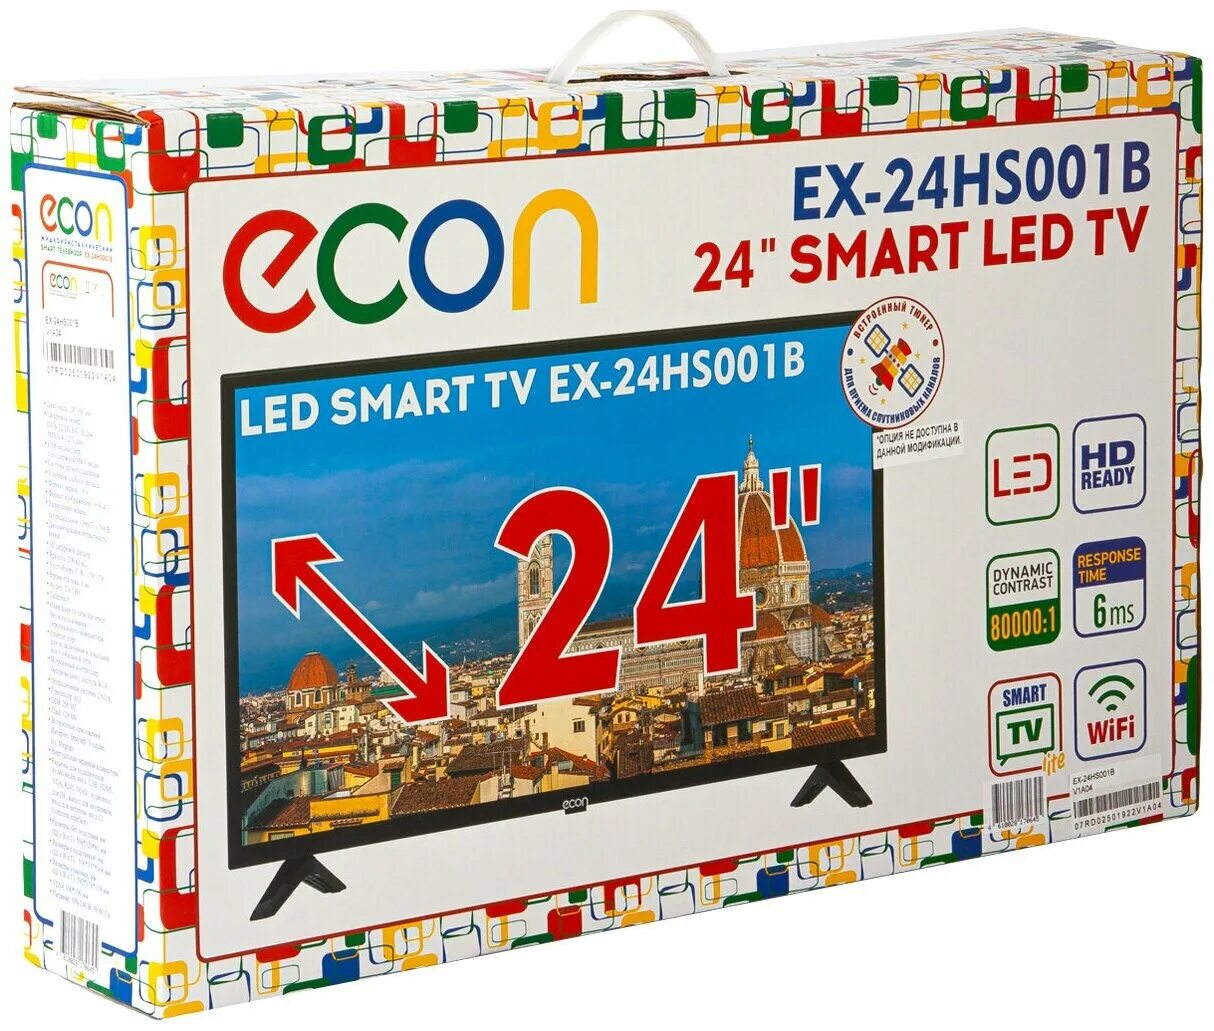 Телевизор ECON ex-24hs001b. ECON ex-24hs001b-Smart. 24" Телевизор ECON ex-24hs001b. Телевизор ECON ex-24hs001b 24" (2019).